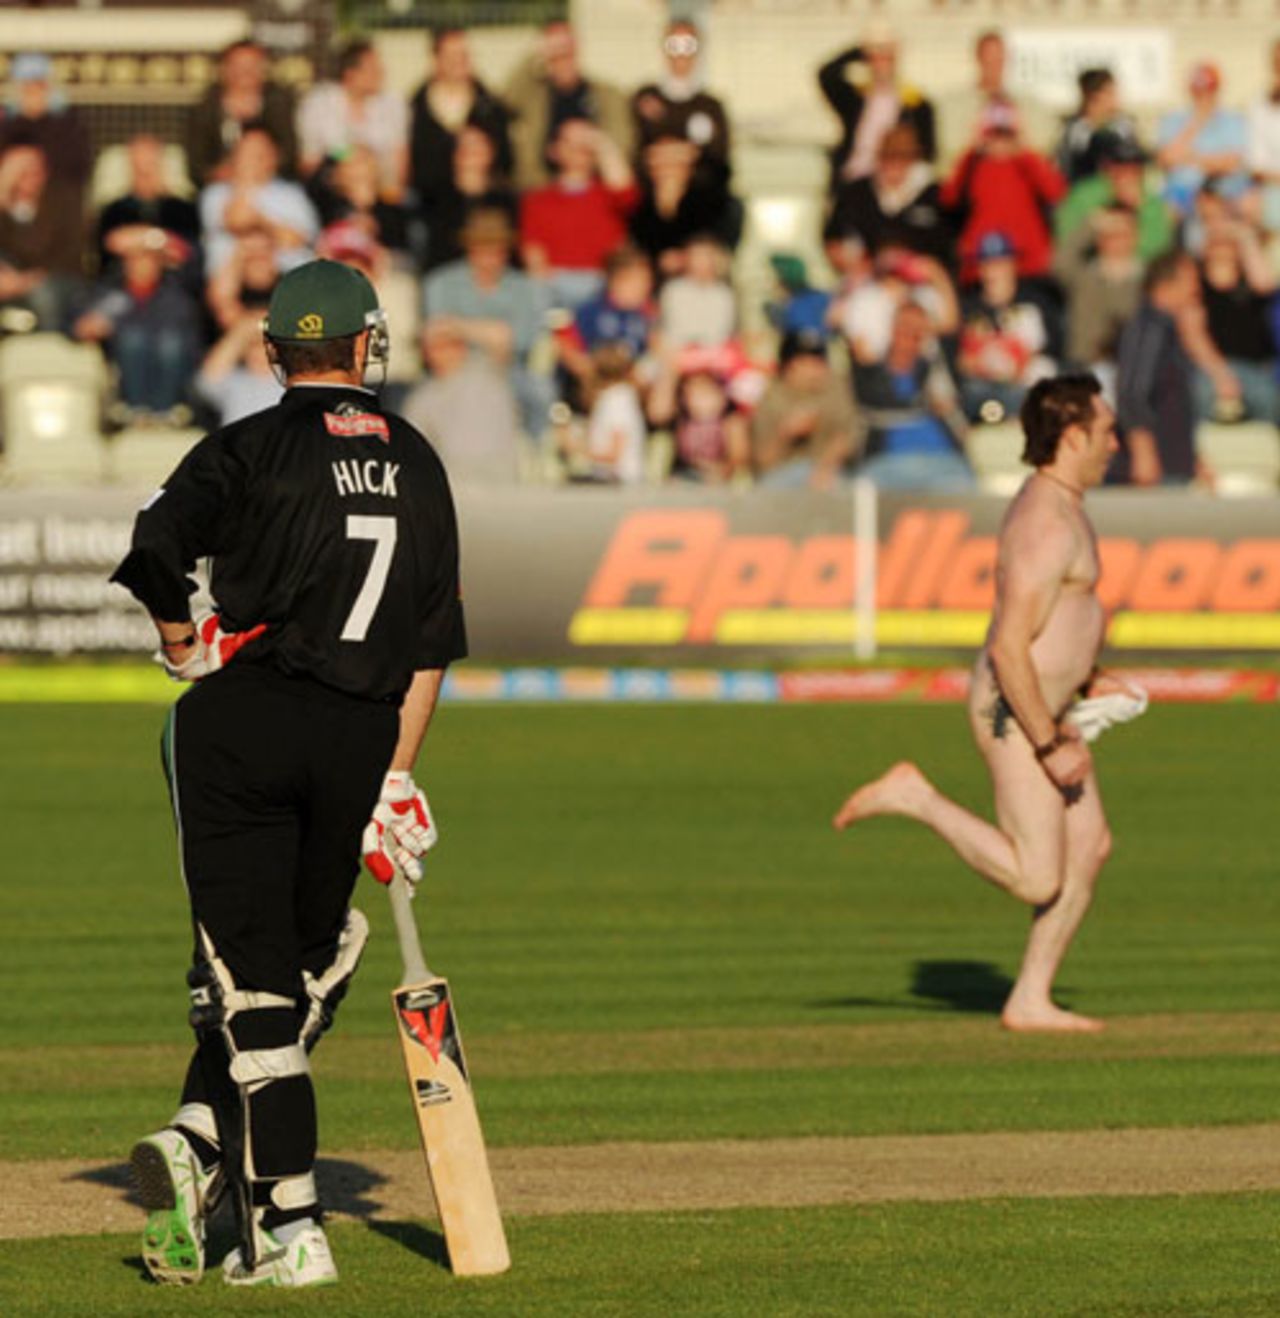 Graeme Hick watches a streak, Worcestershire v Somerset, Twenty20, Worcester, June 19, 2008